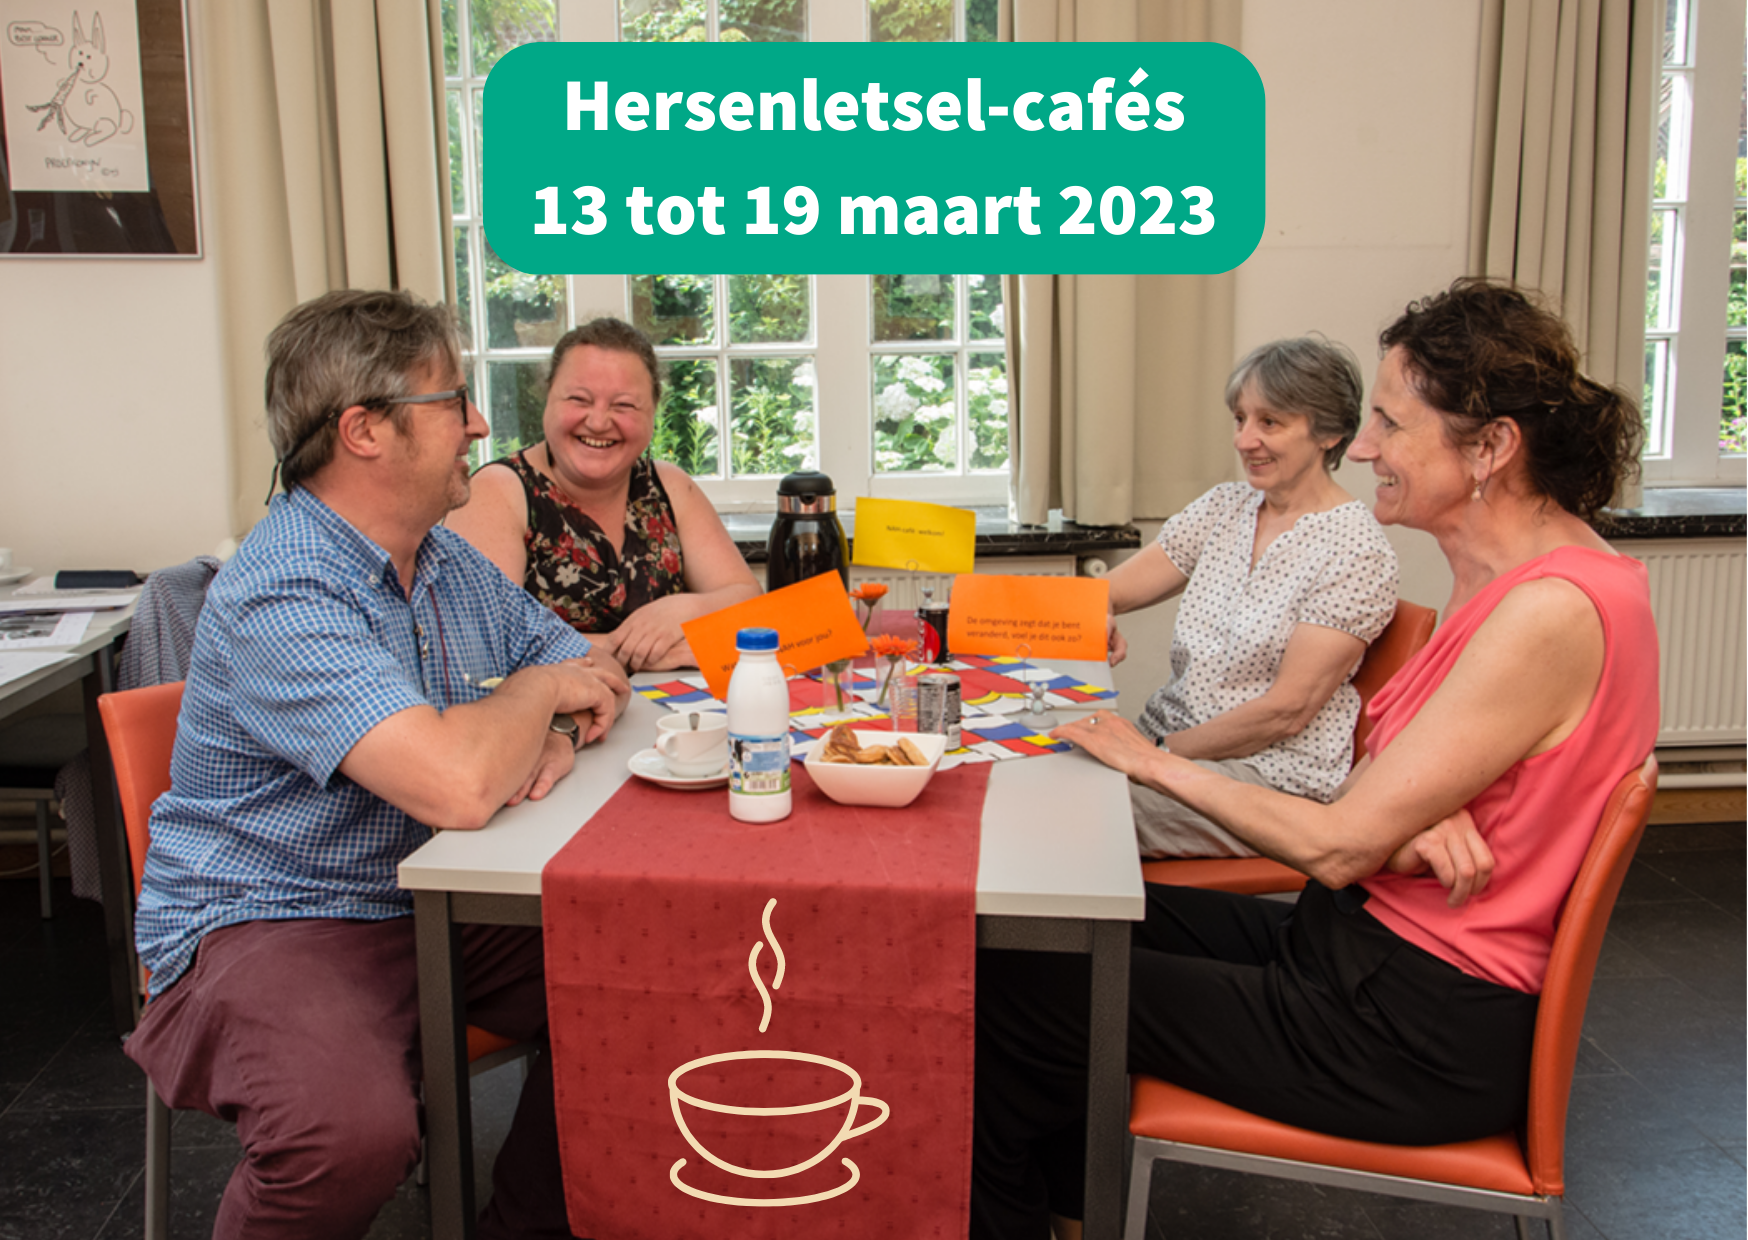 Oproep organisatoren van Hersenletsel-cafés - 13 tot 19 maart